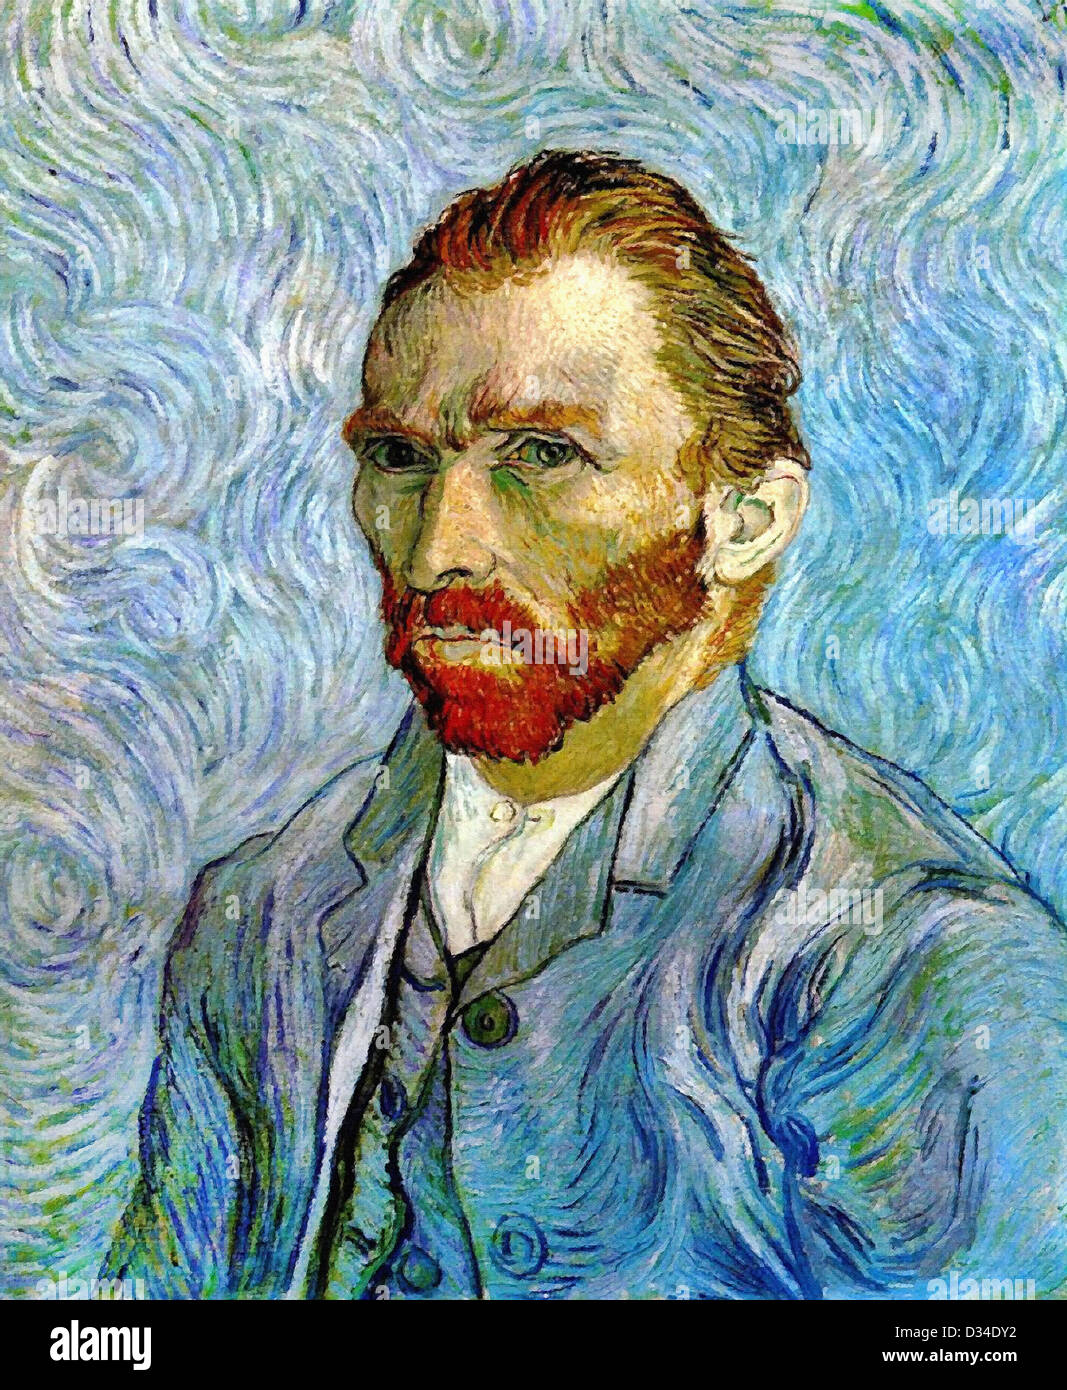 Vincent van Gogh, Self Portrait. 1889. Post-Impressionism. Oil on canvas. Musée d'Orsay, Paris, France. Stock Photo